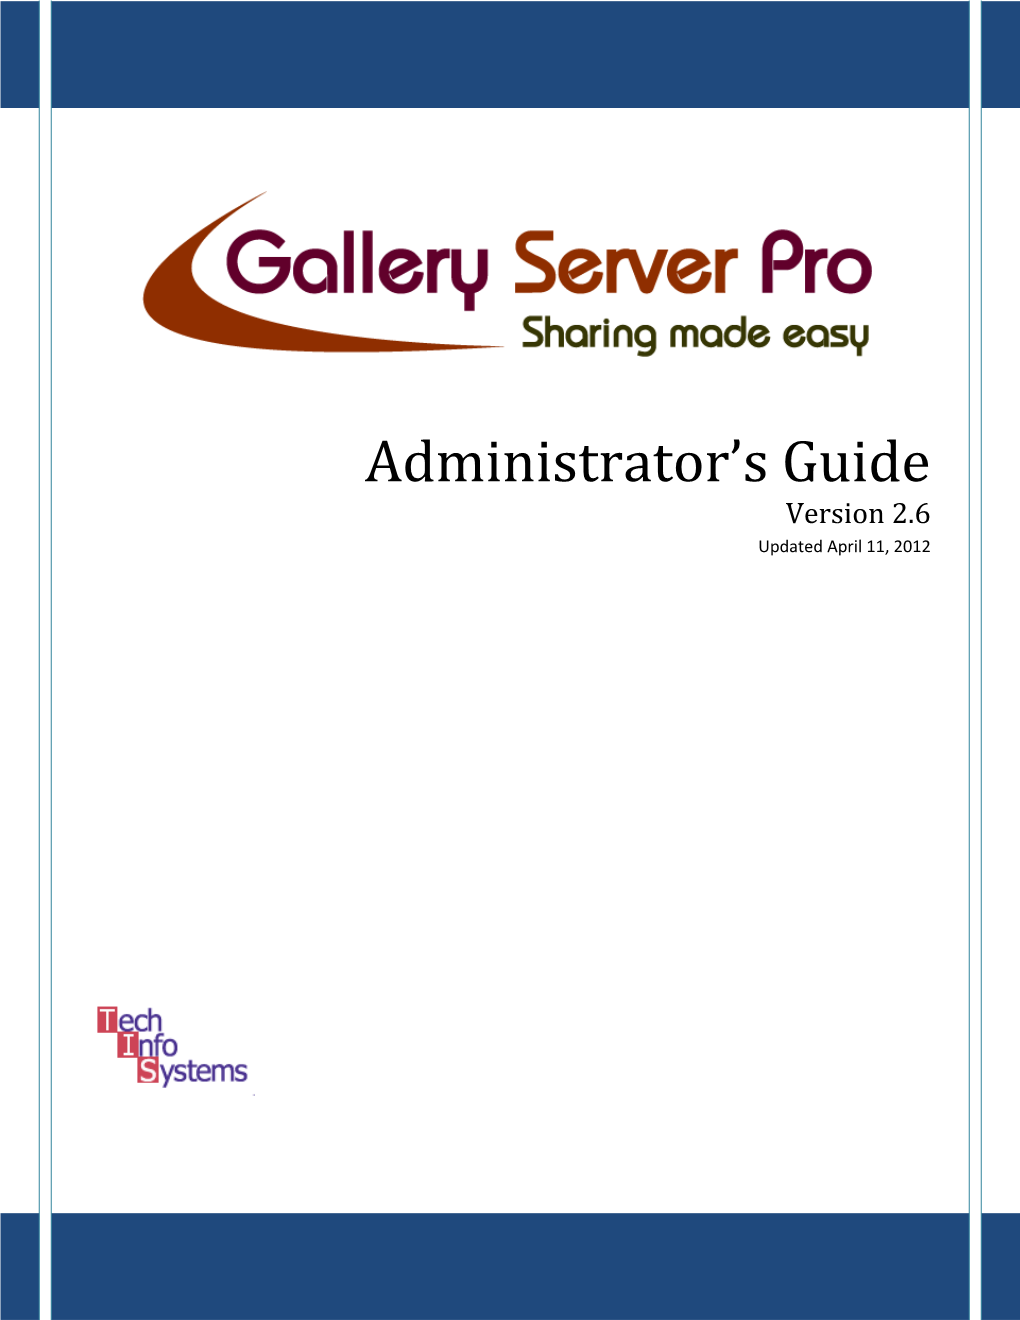 3. Running Gallery Server Pro